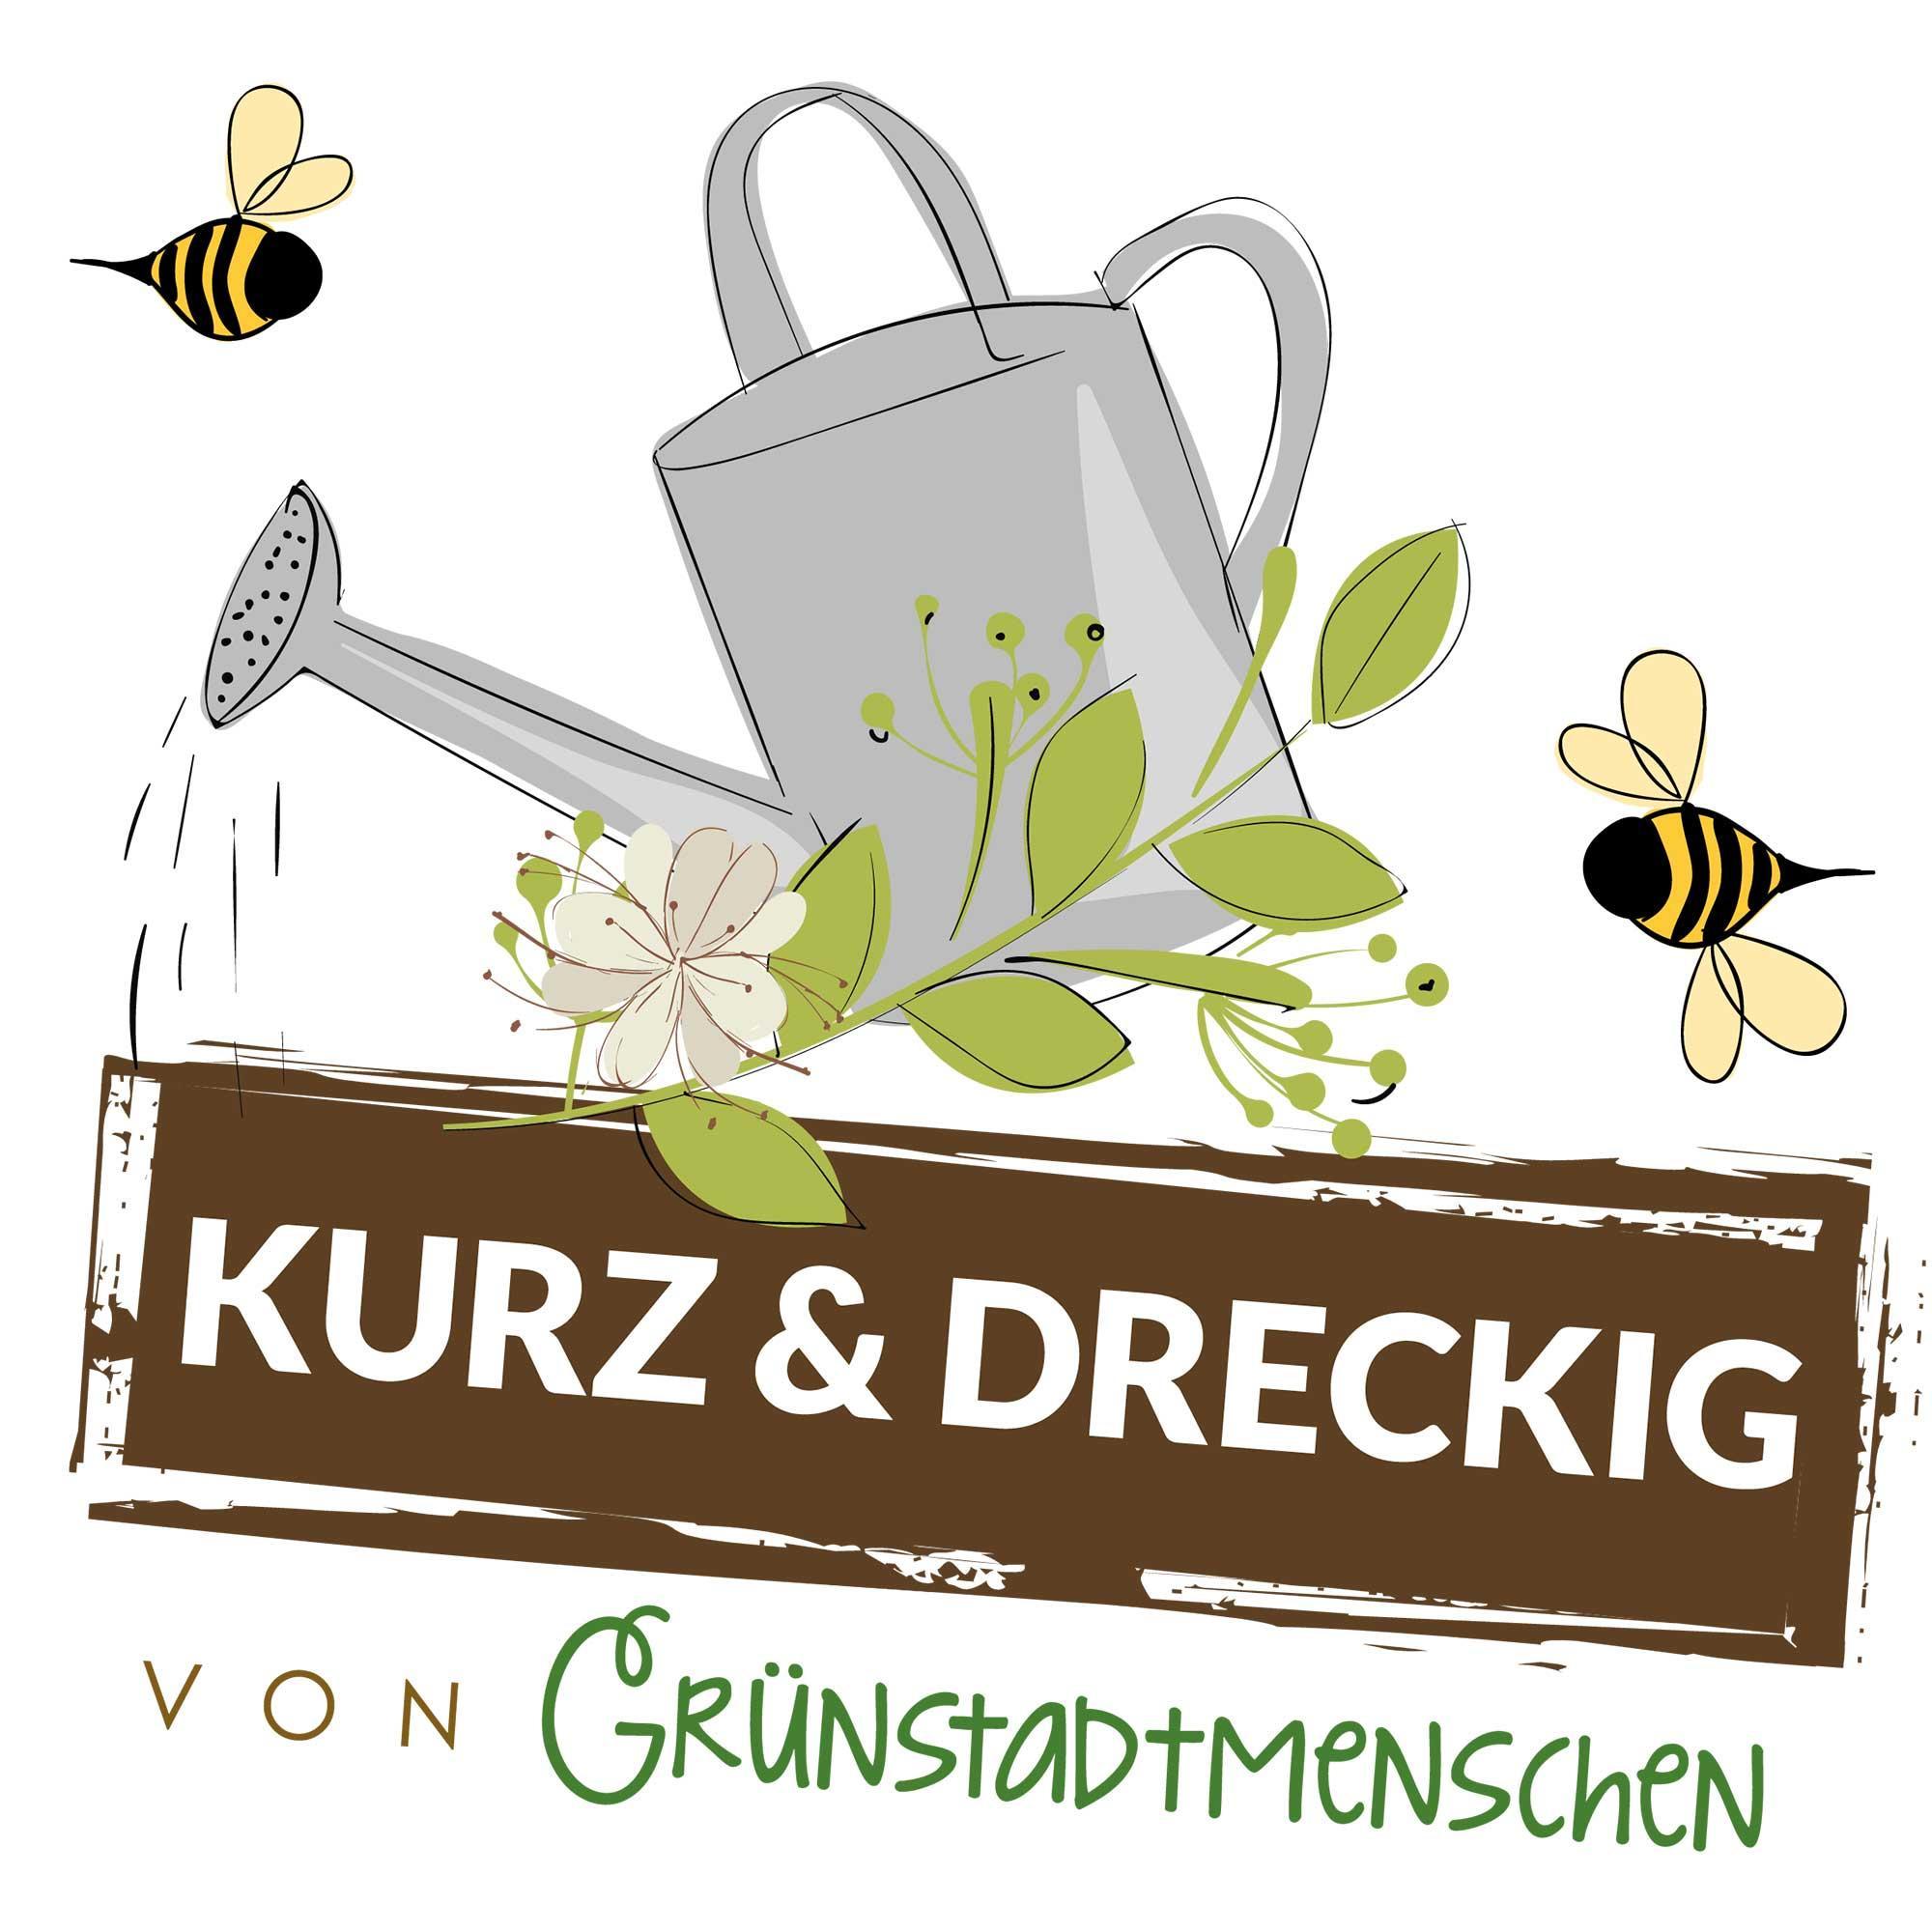 #73 Kurz & dreckig: Karinas Gartentipps für den Dezember